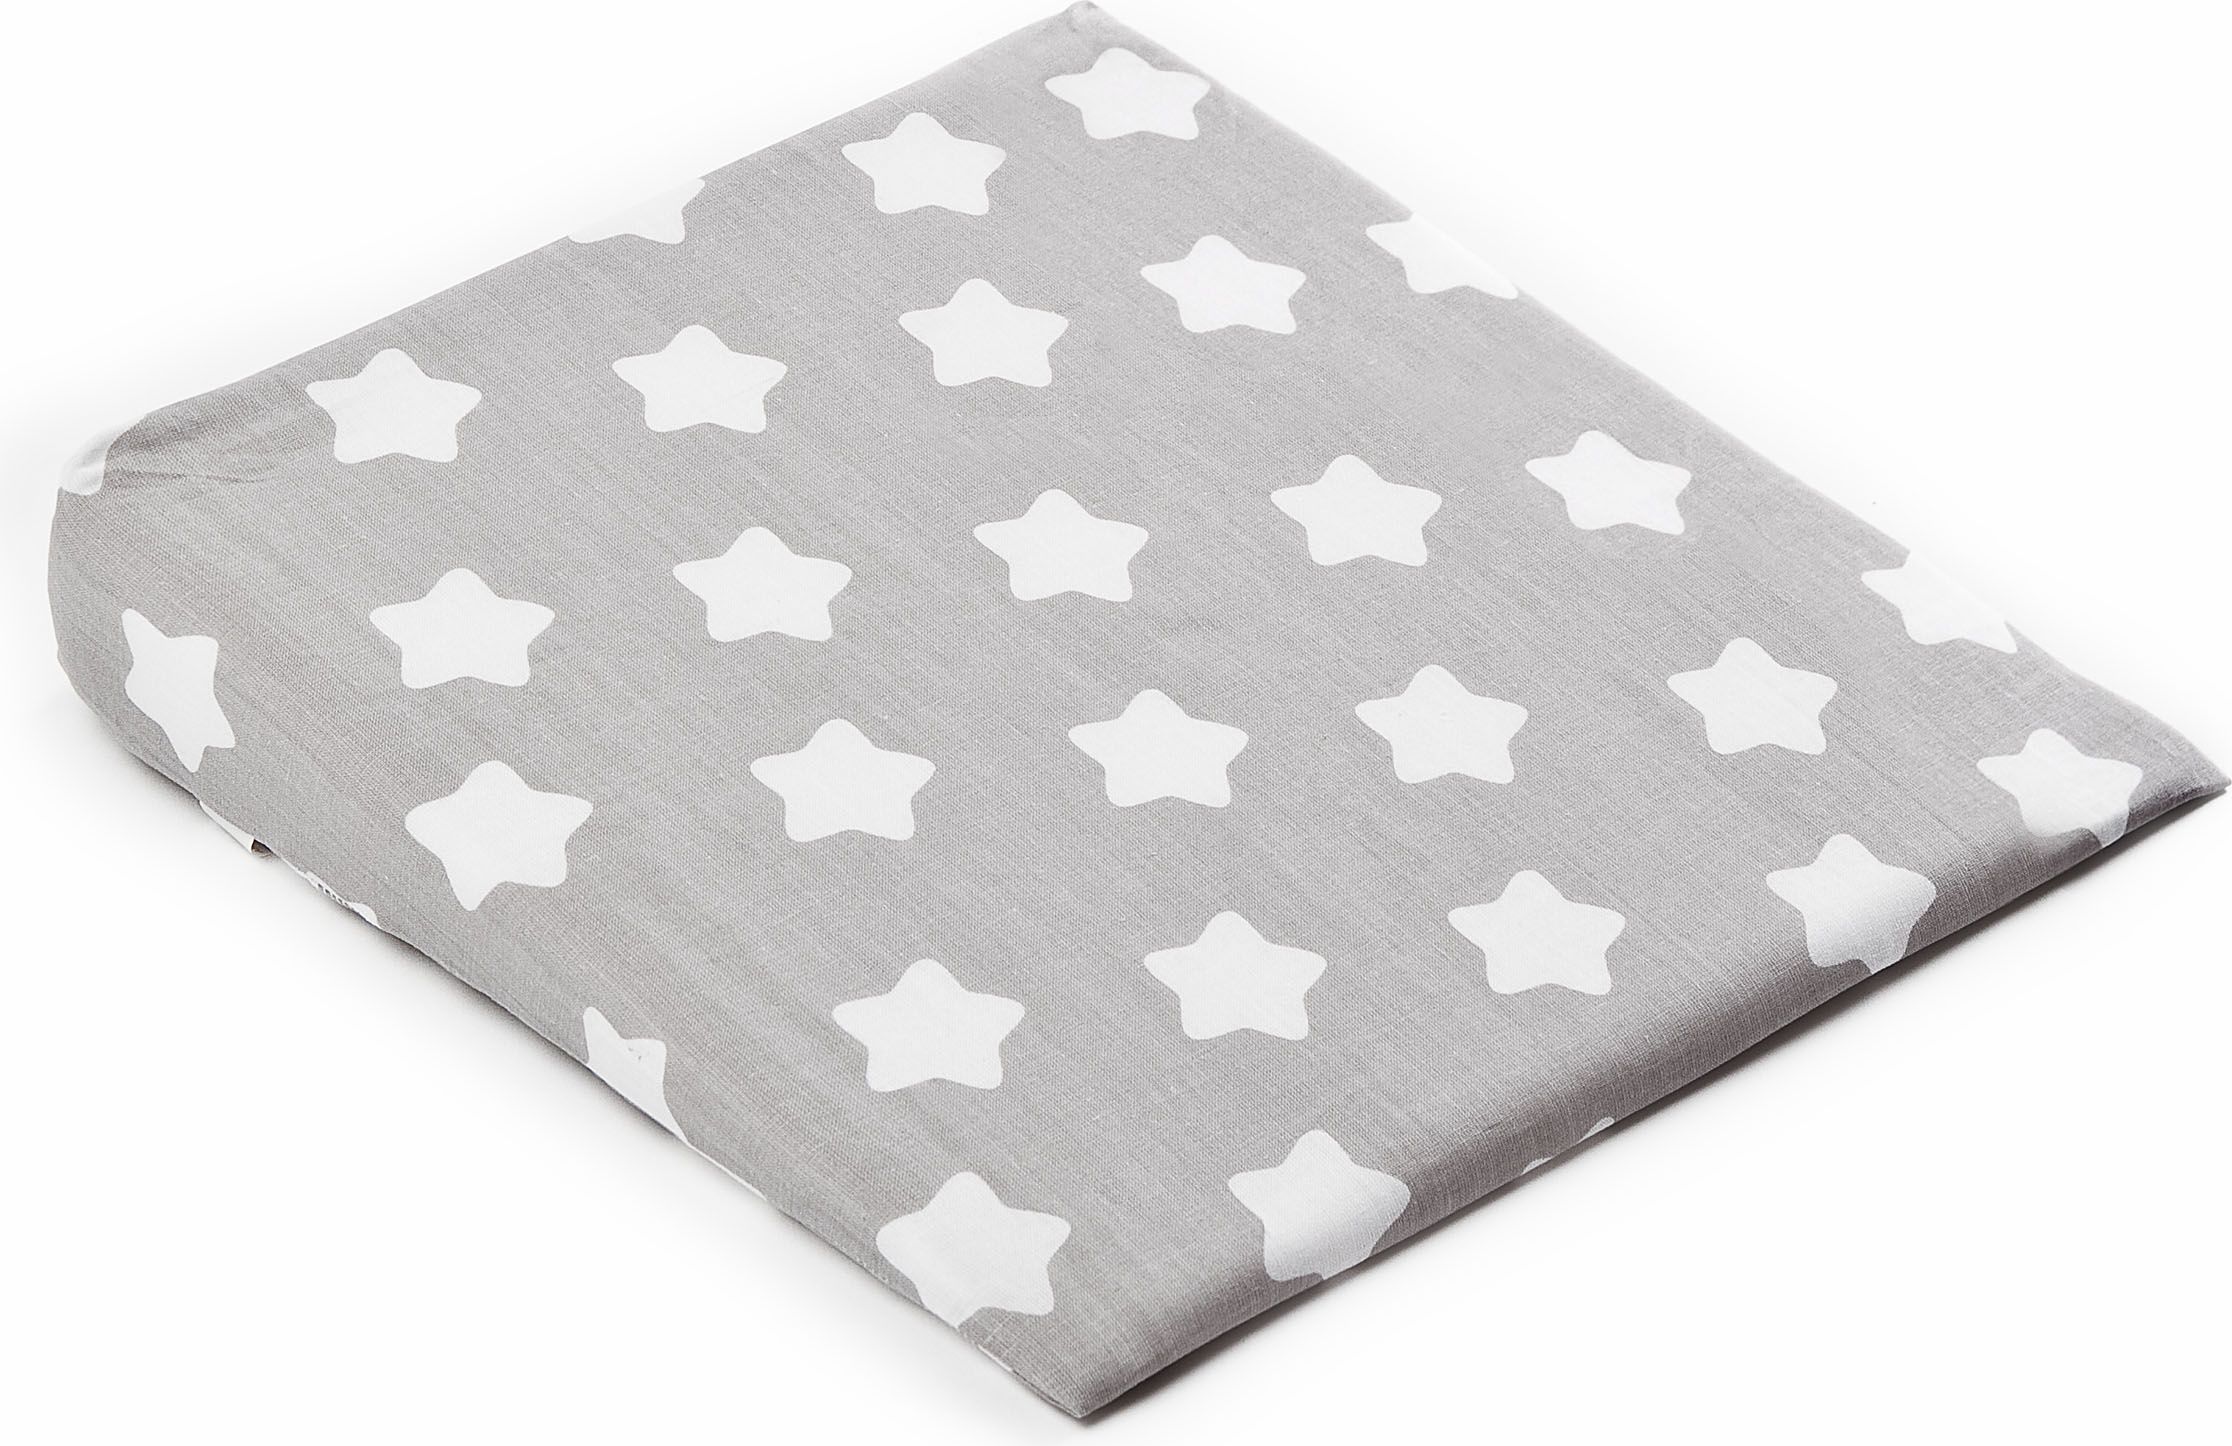 Potah na kojenecký polštář - klín SENSILLO, 38x30cm, motiv hvězdičky, barva šedá (bez polštáře) - obrázek 1